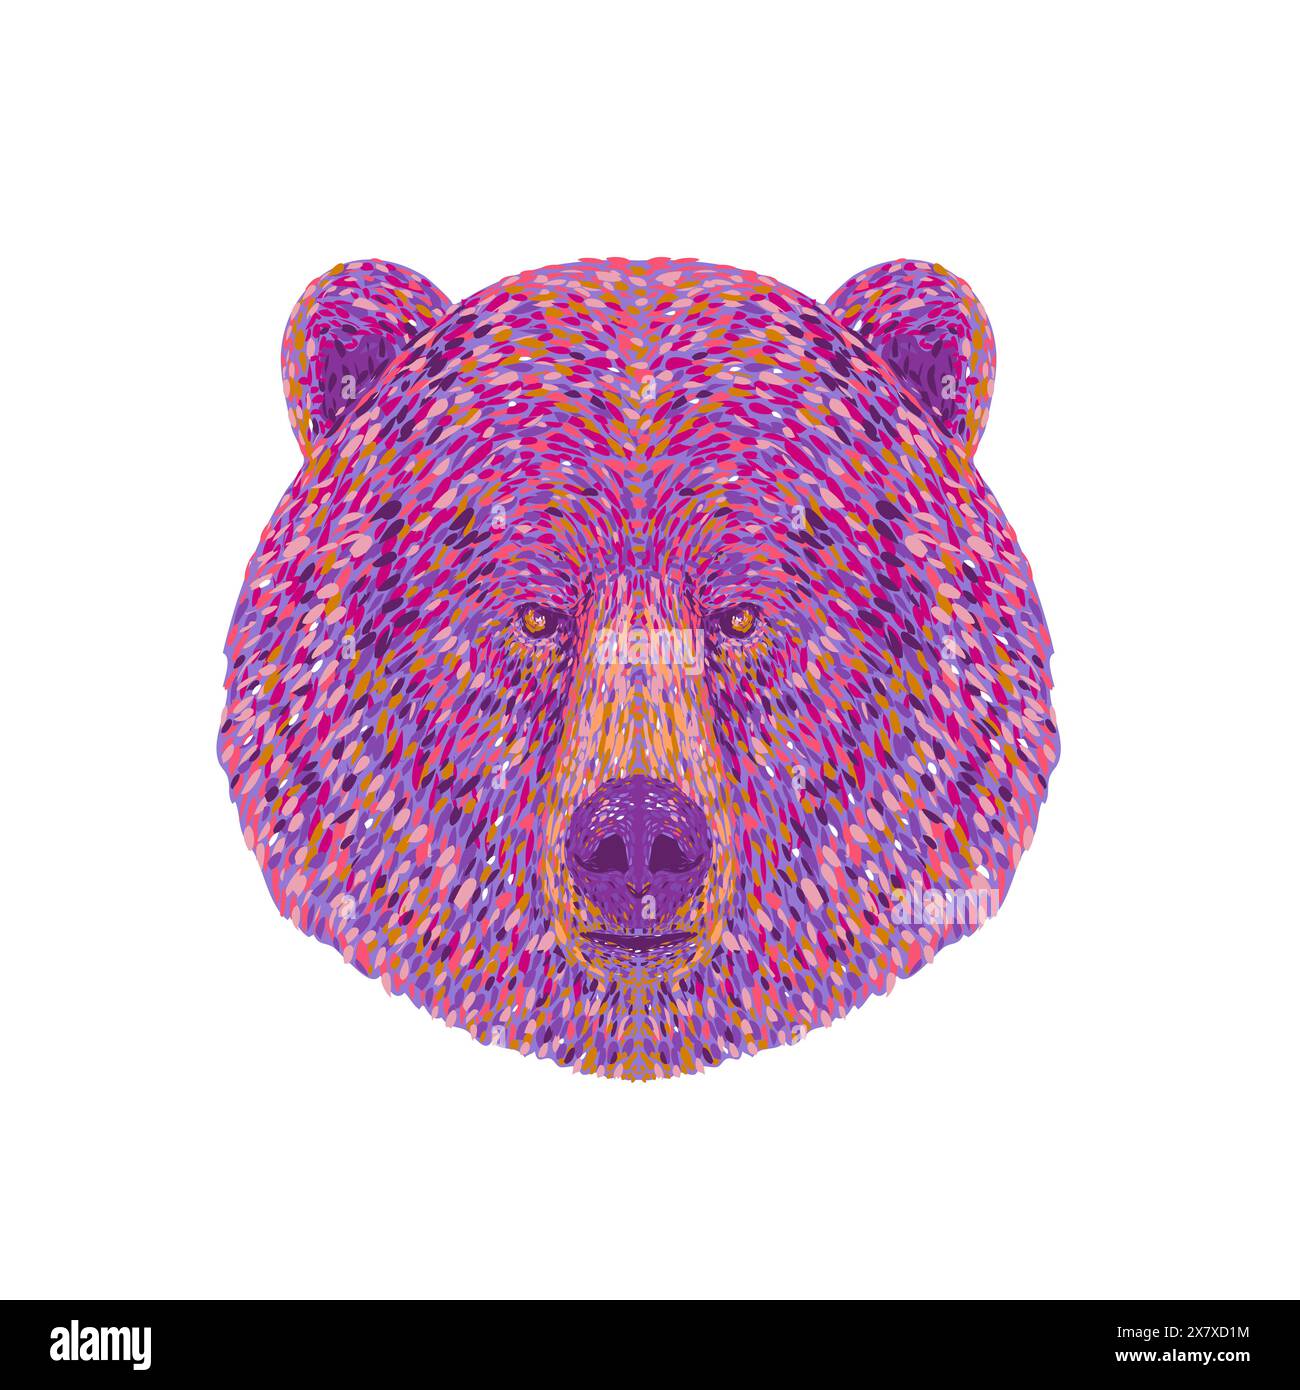 Pointillist, Impressionist oder Pop-Art-Darstellung des Kopfes eines Grizzlybären oder des nordamerikanischen Braunbären oder einfach nur Grizzly von Fron aus gesehen Stock Vektor